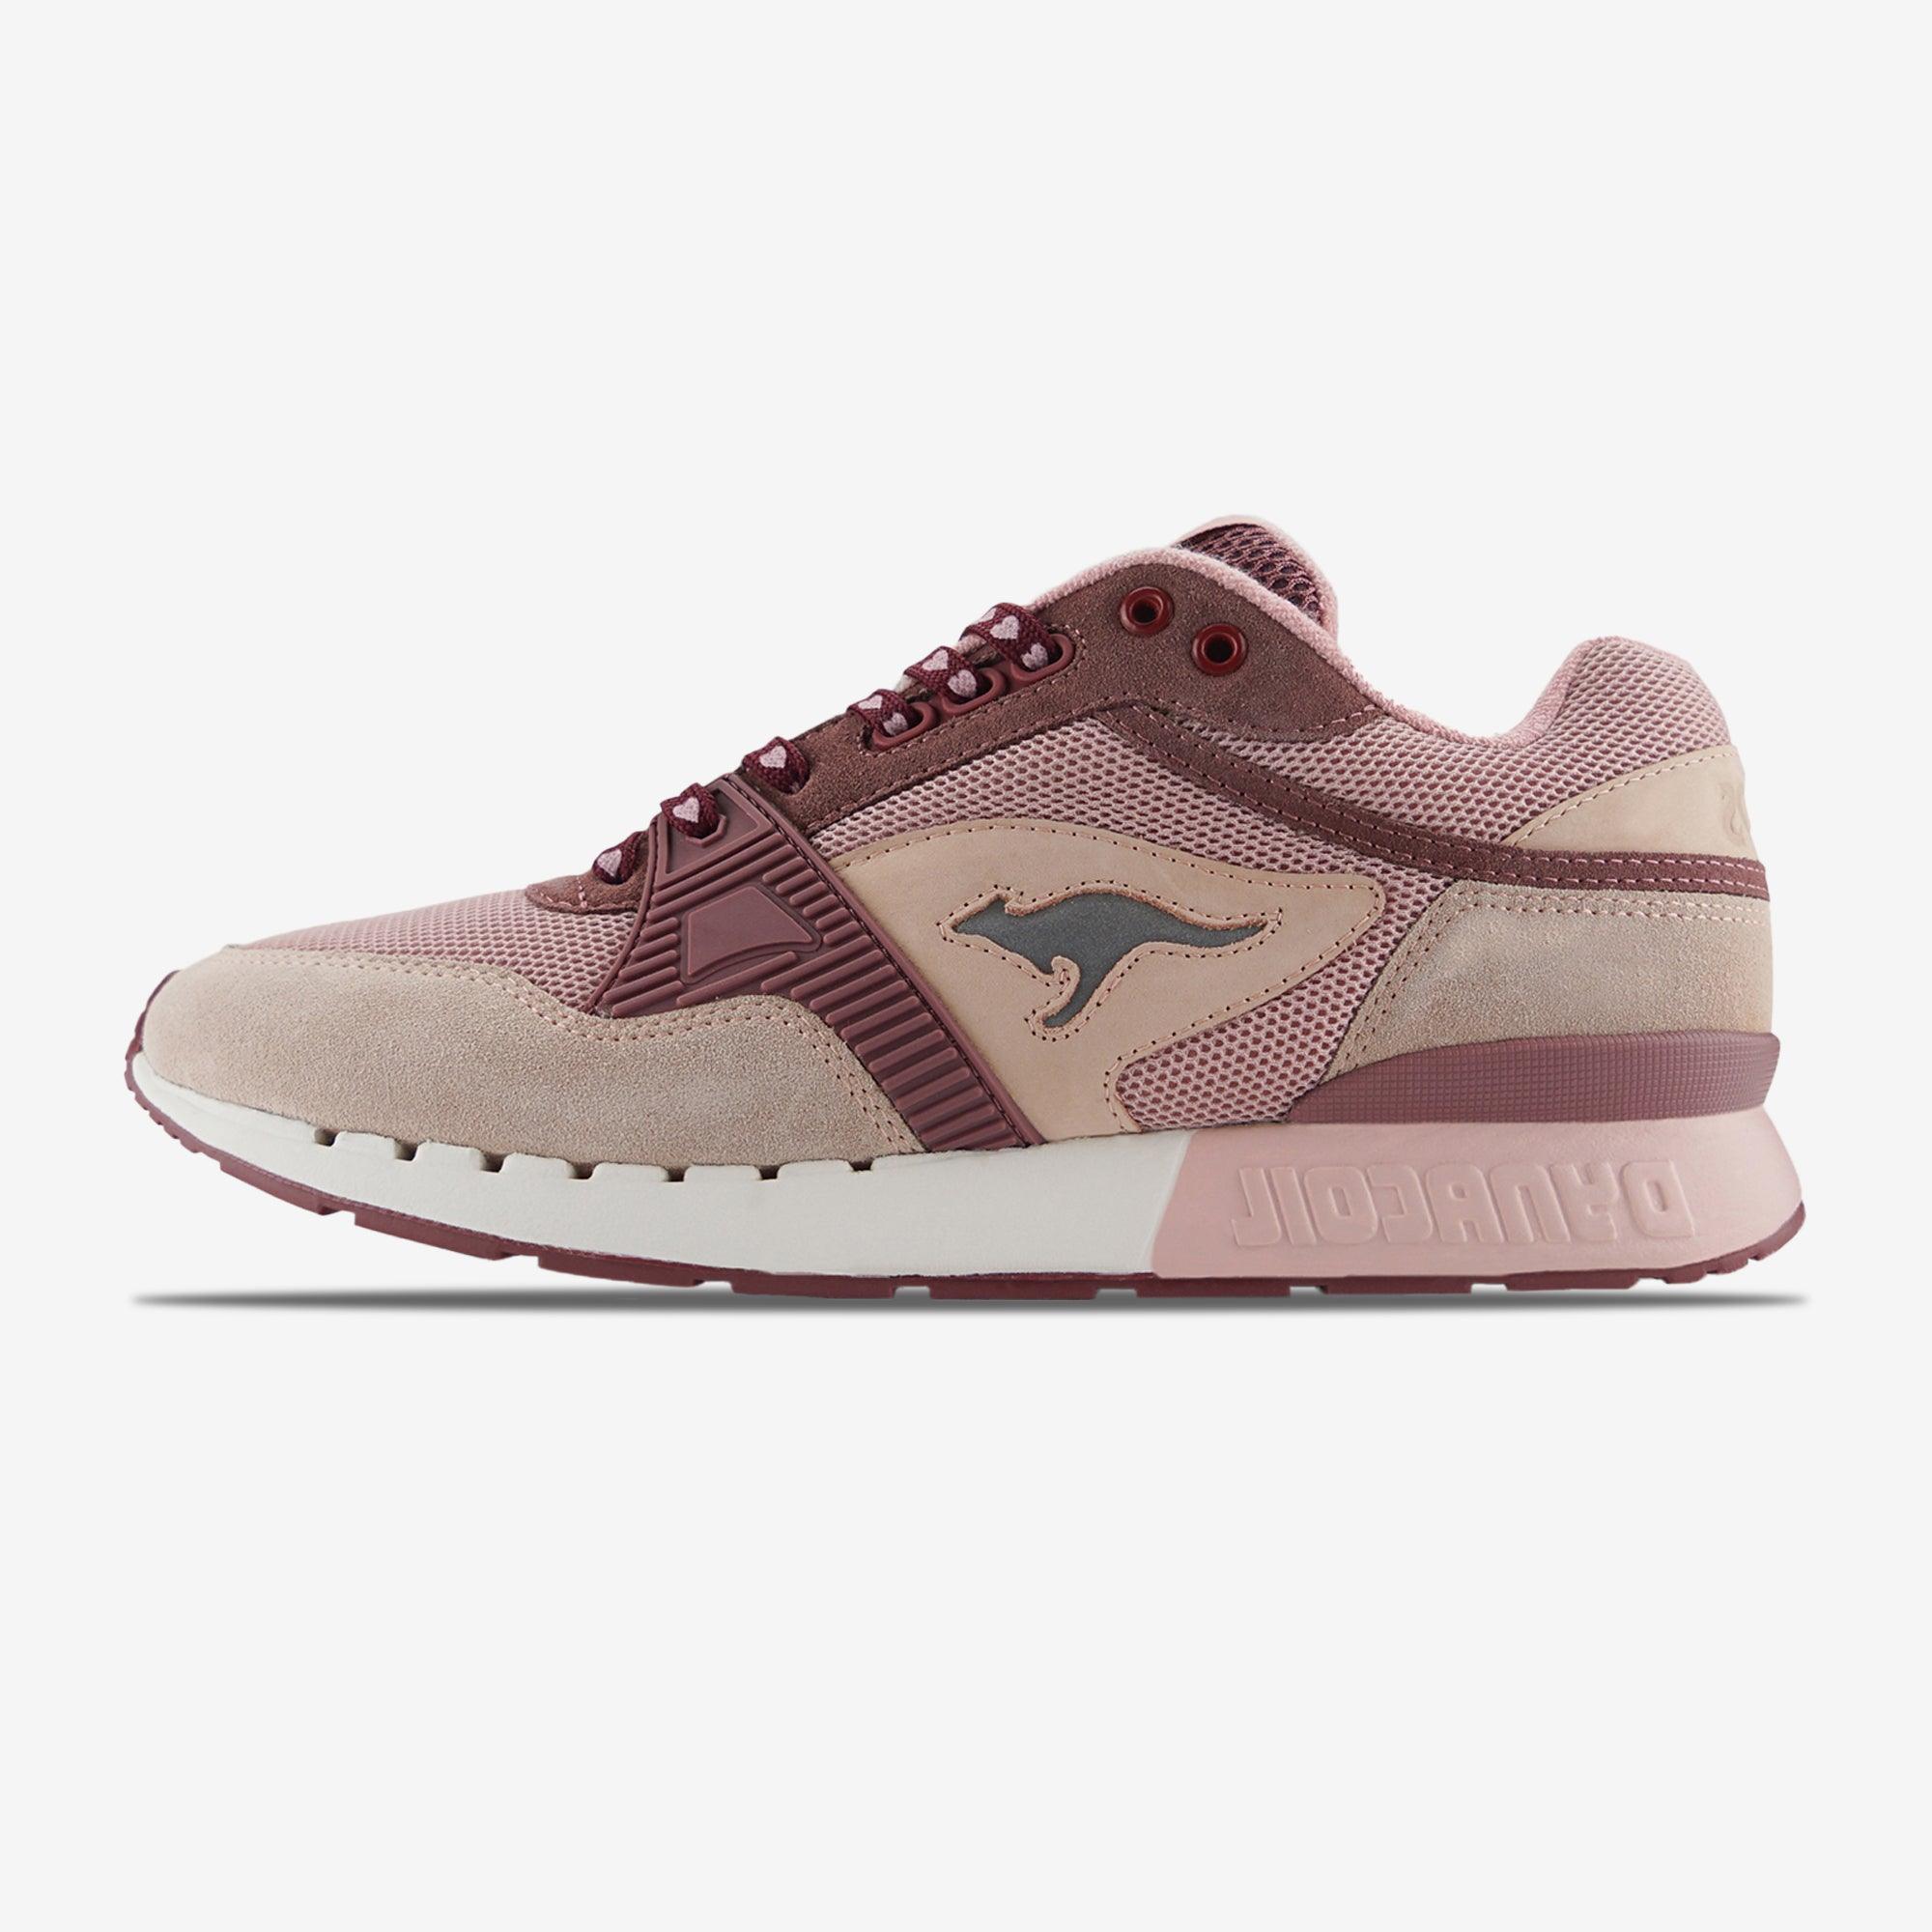 Kangaroos 2R "Valentine frost pink/dusty rose" 000 6145 | Men Sneakers |